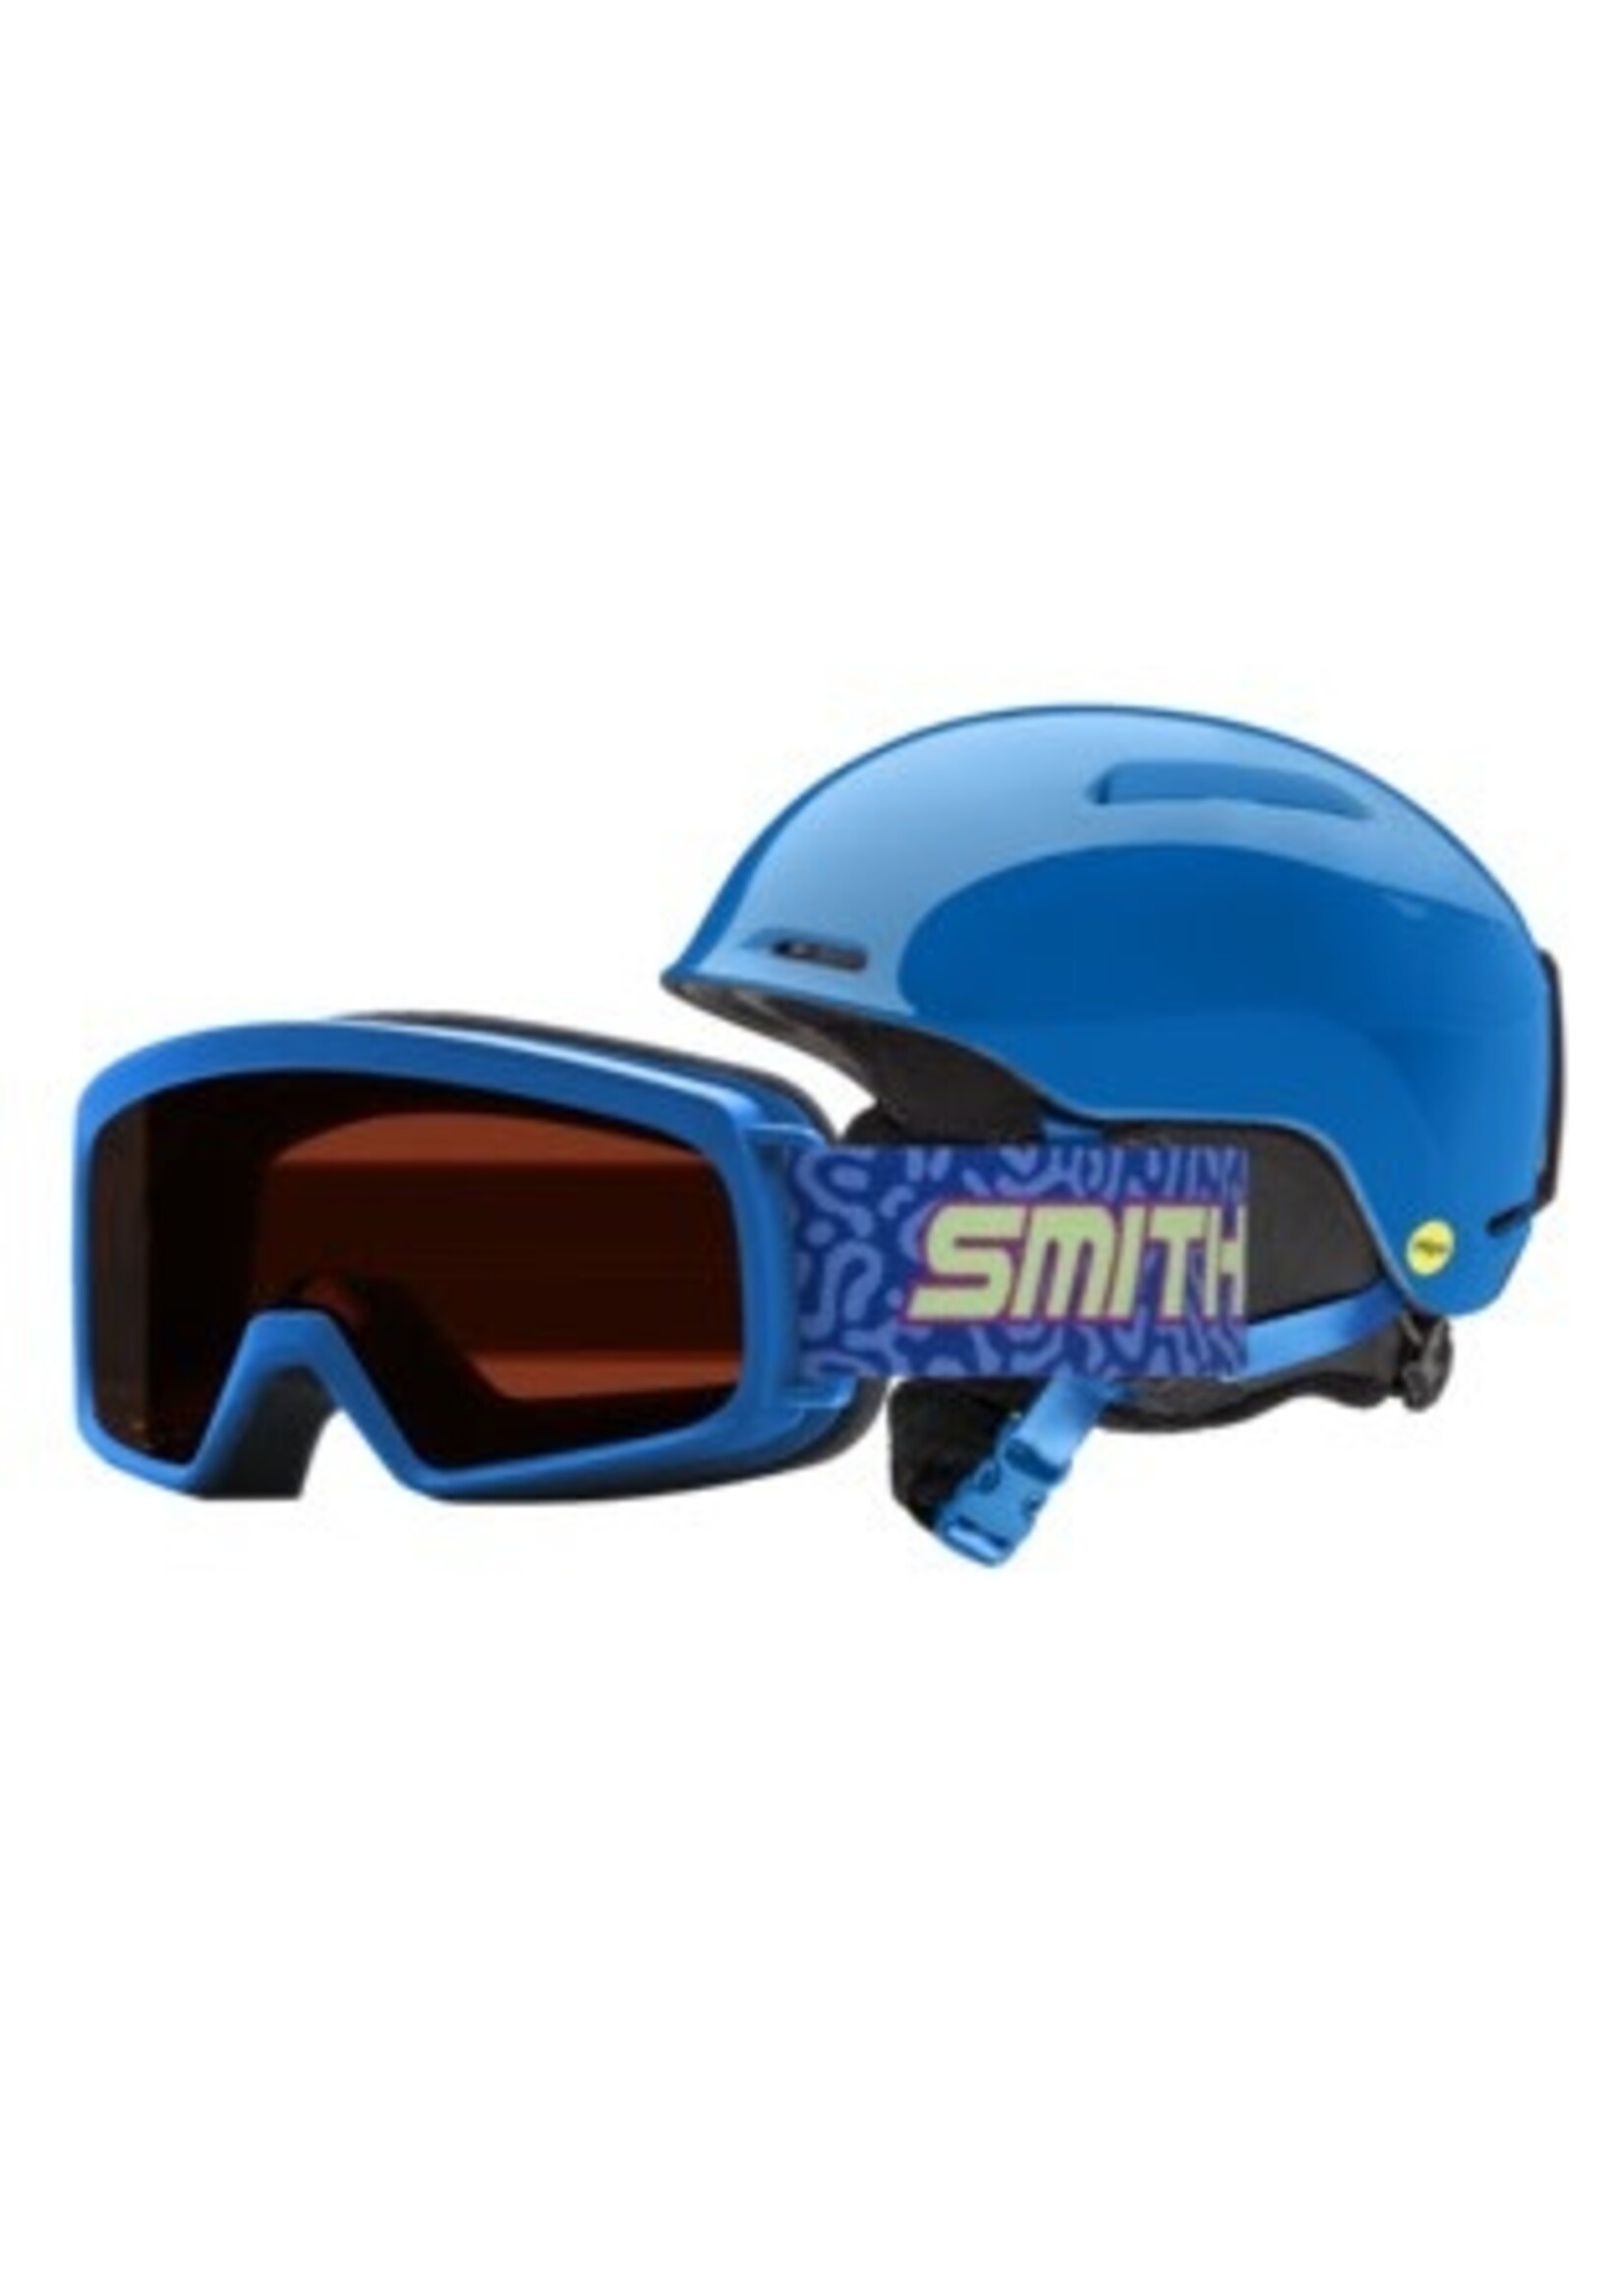 Smith Junior Helmet Combo Glide MIPS